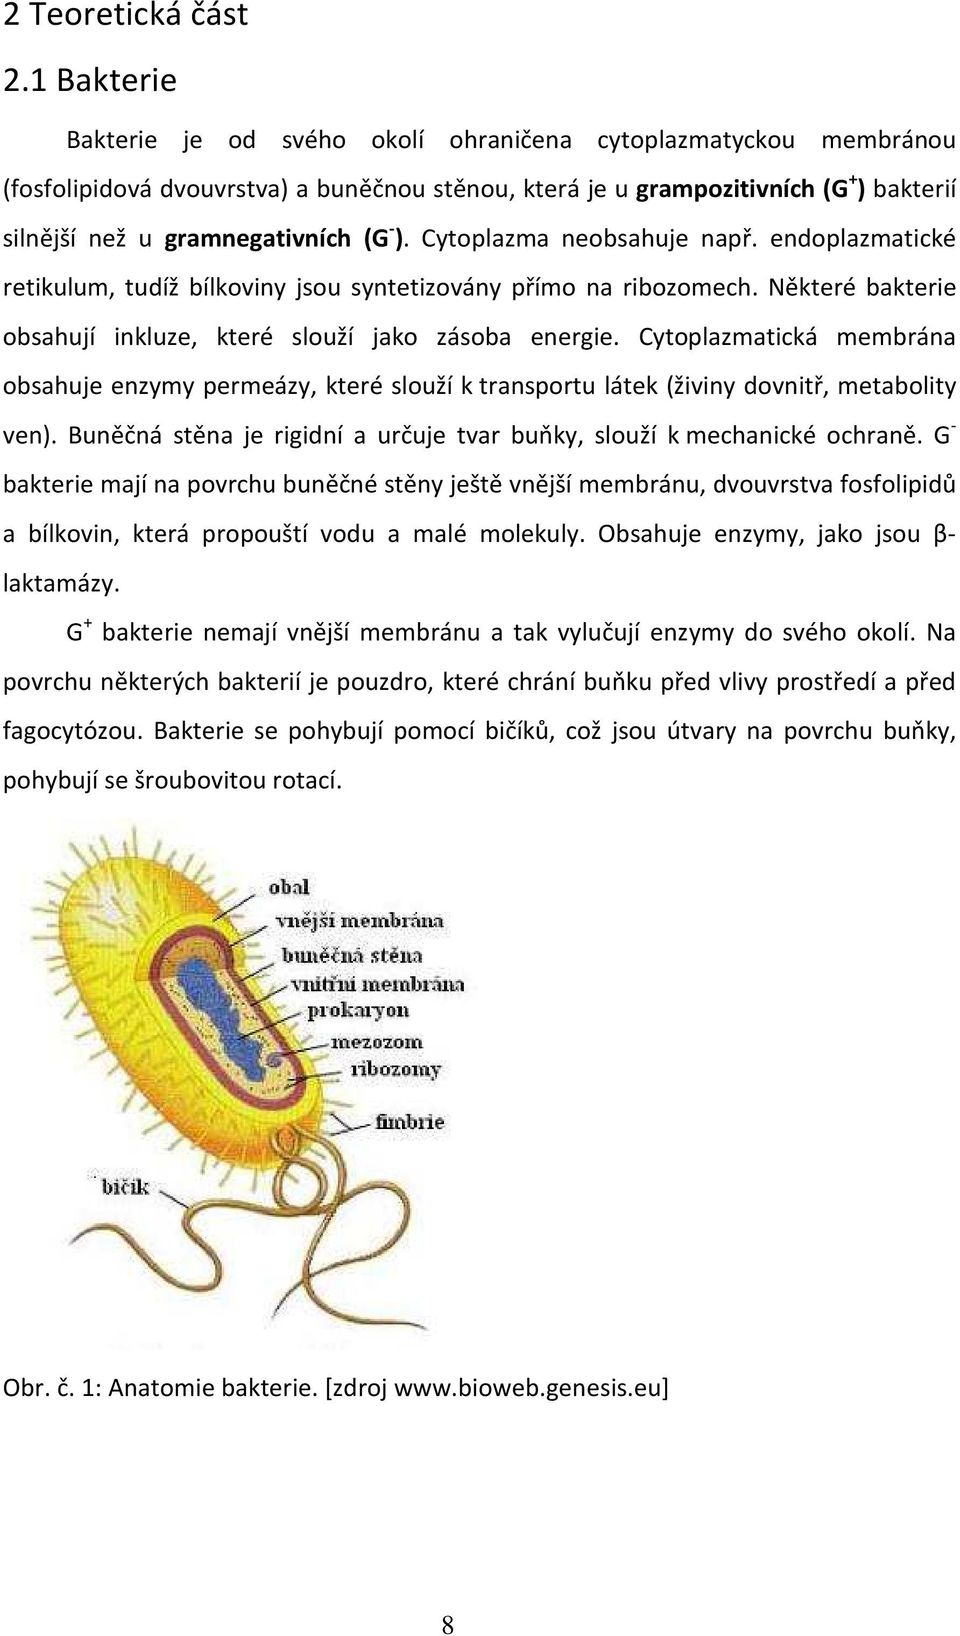 - ). Cytoplazma neobsahuje např. endoplazmatické retikulum, tudíž bílkoviny jsou syntetizovány přímo na ribozomech. Některé bakterie obsahují inkluze, které slouží jako zásoba energie.